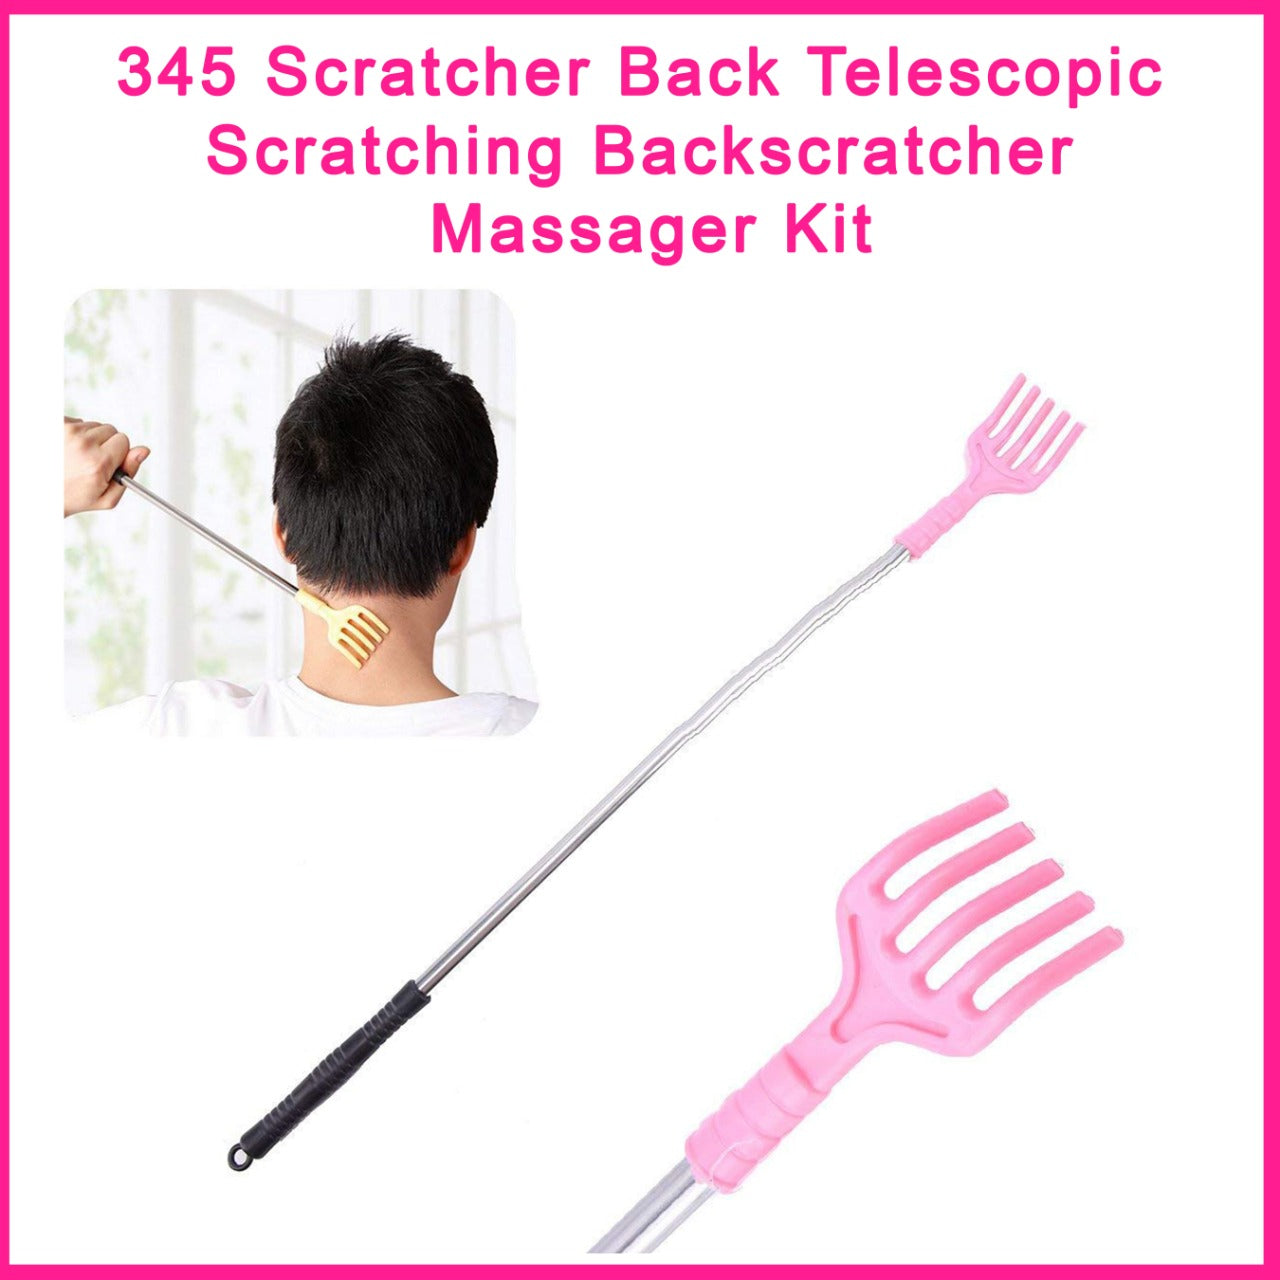 Scratcher Back Telescopic Scratching Backscratcher Massager Kit